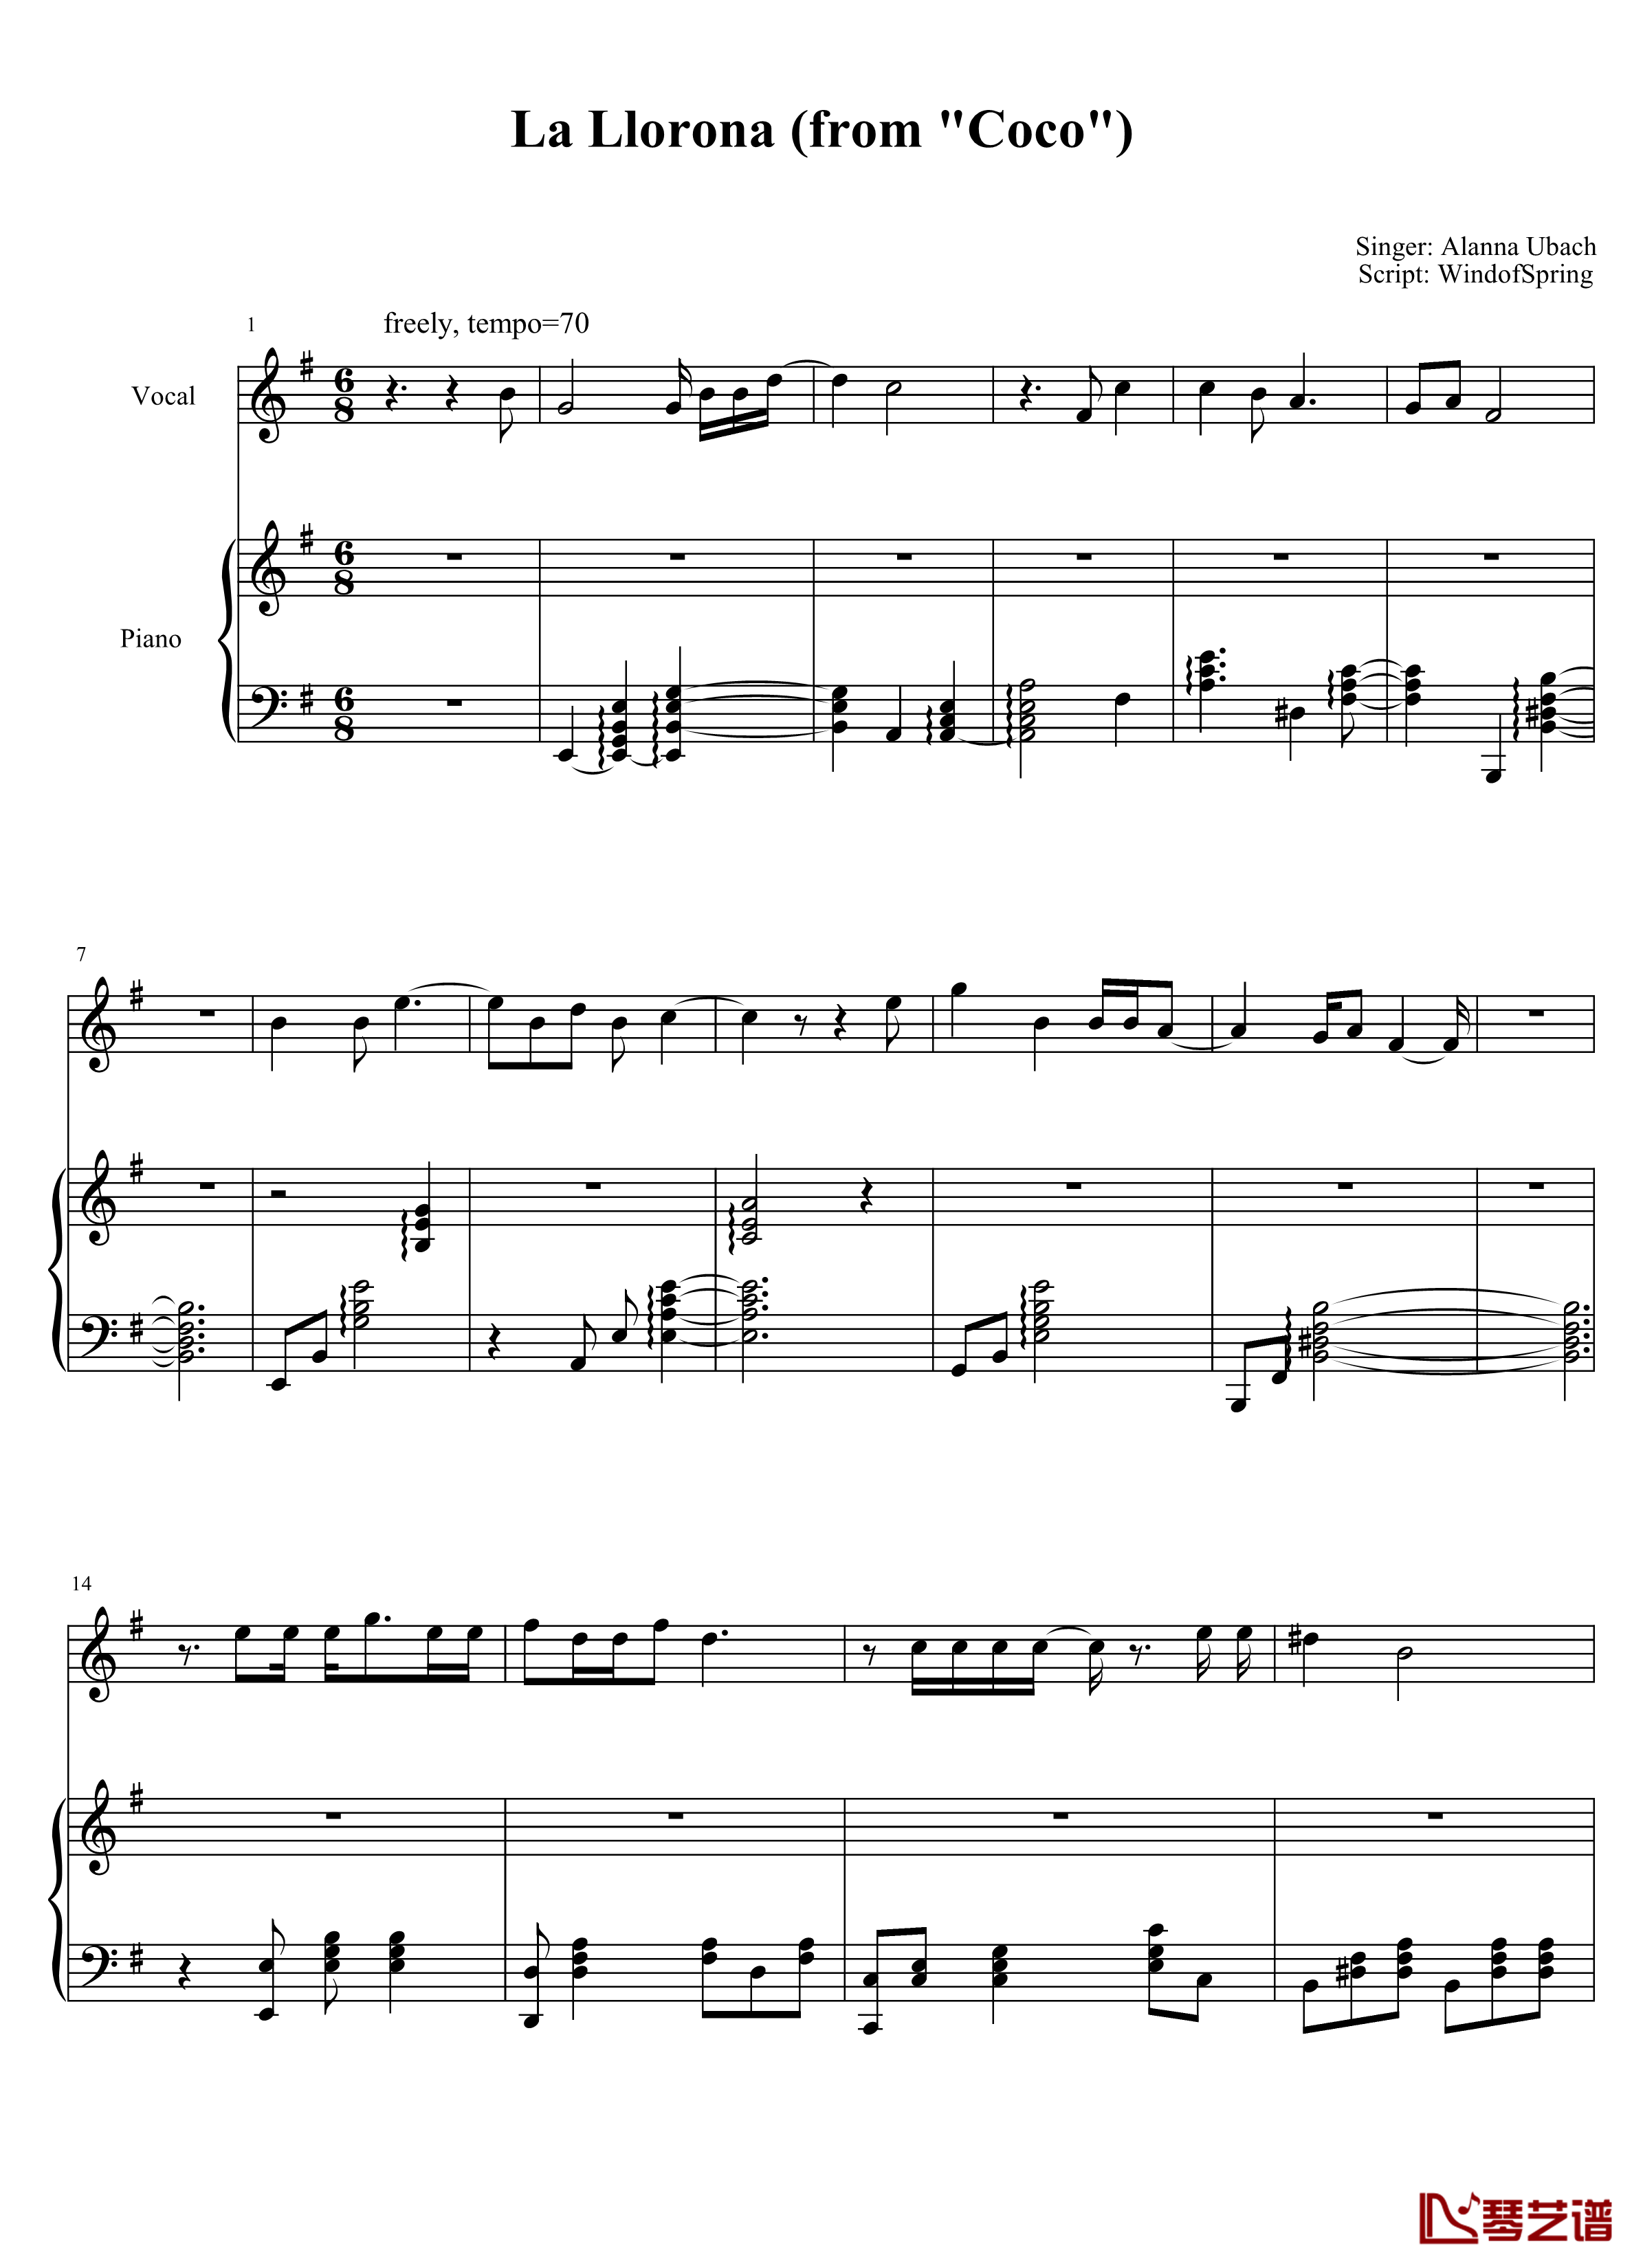 La Llorona钢琴谱-coco1